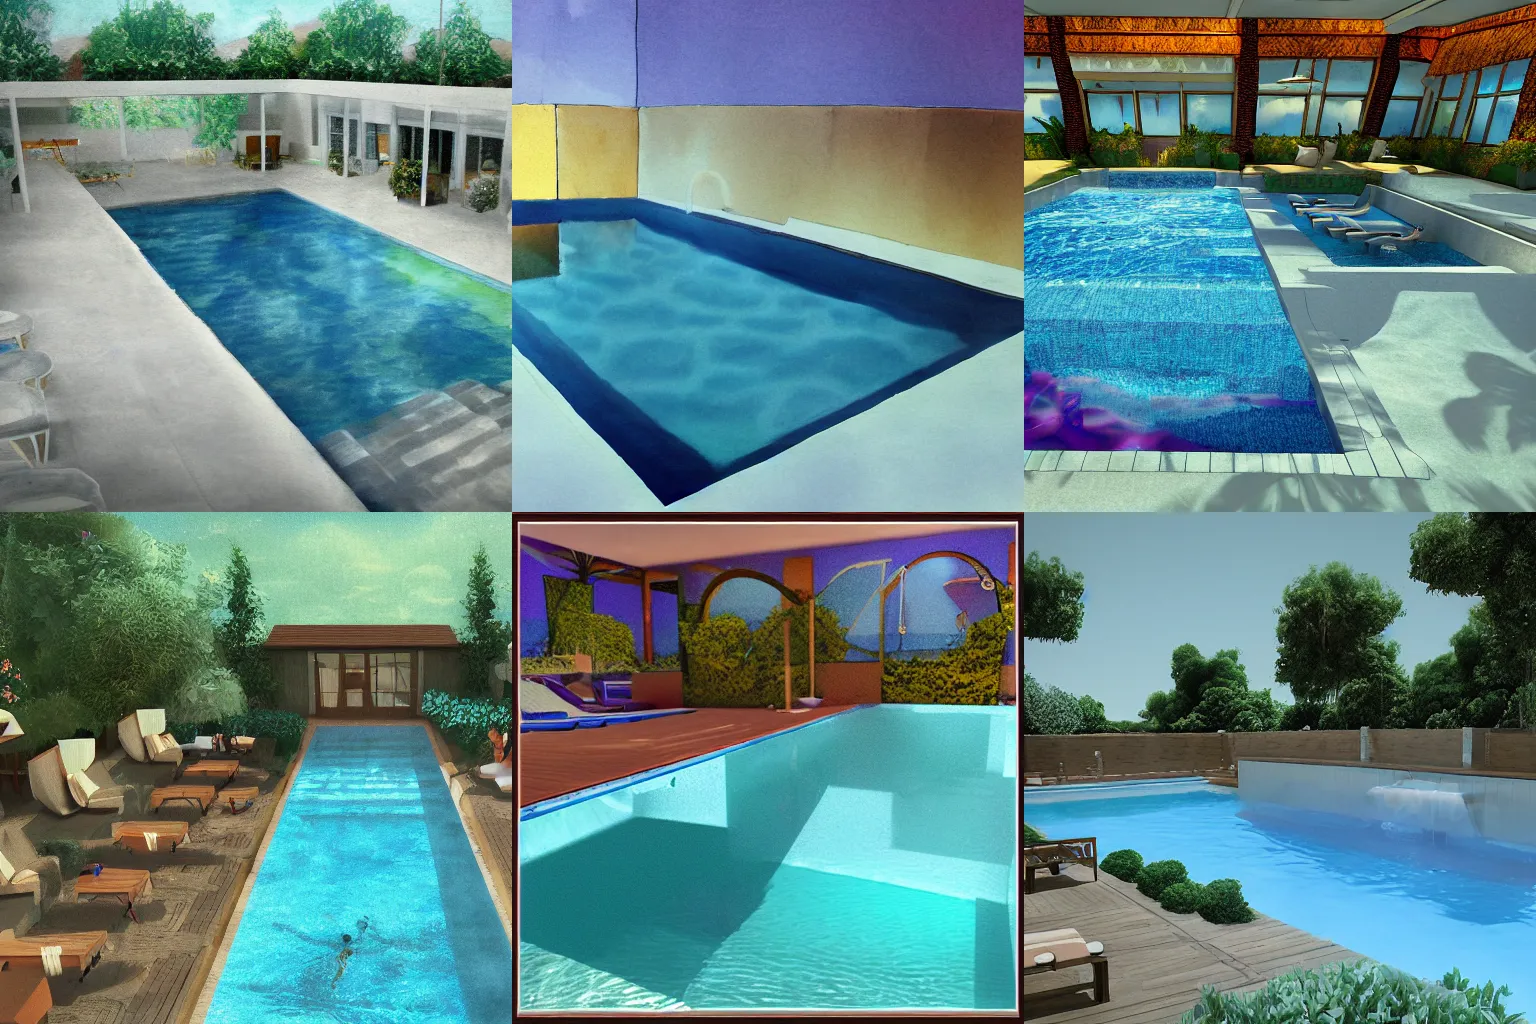 Prompt: dream like rendering of pool by teaaalexis